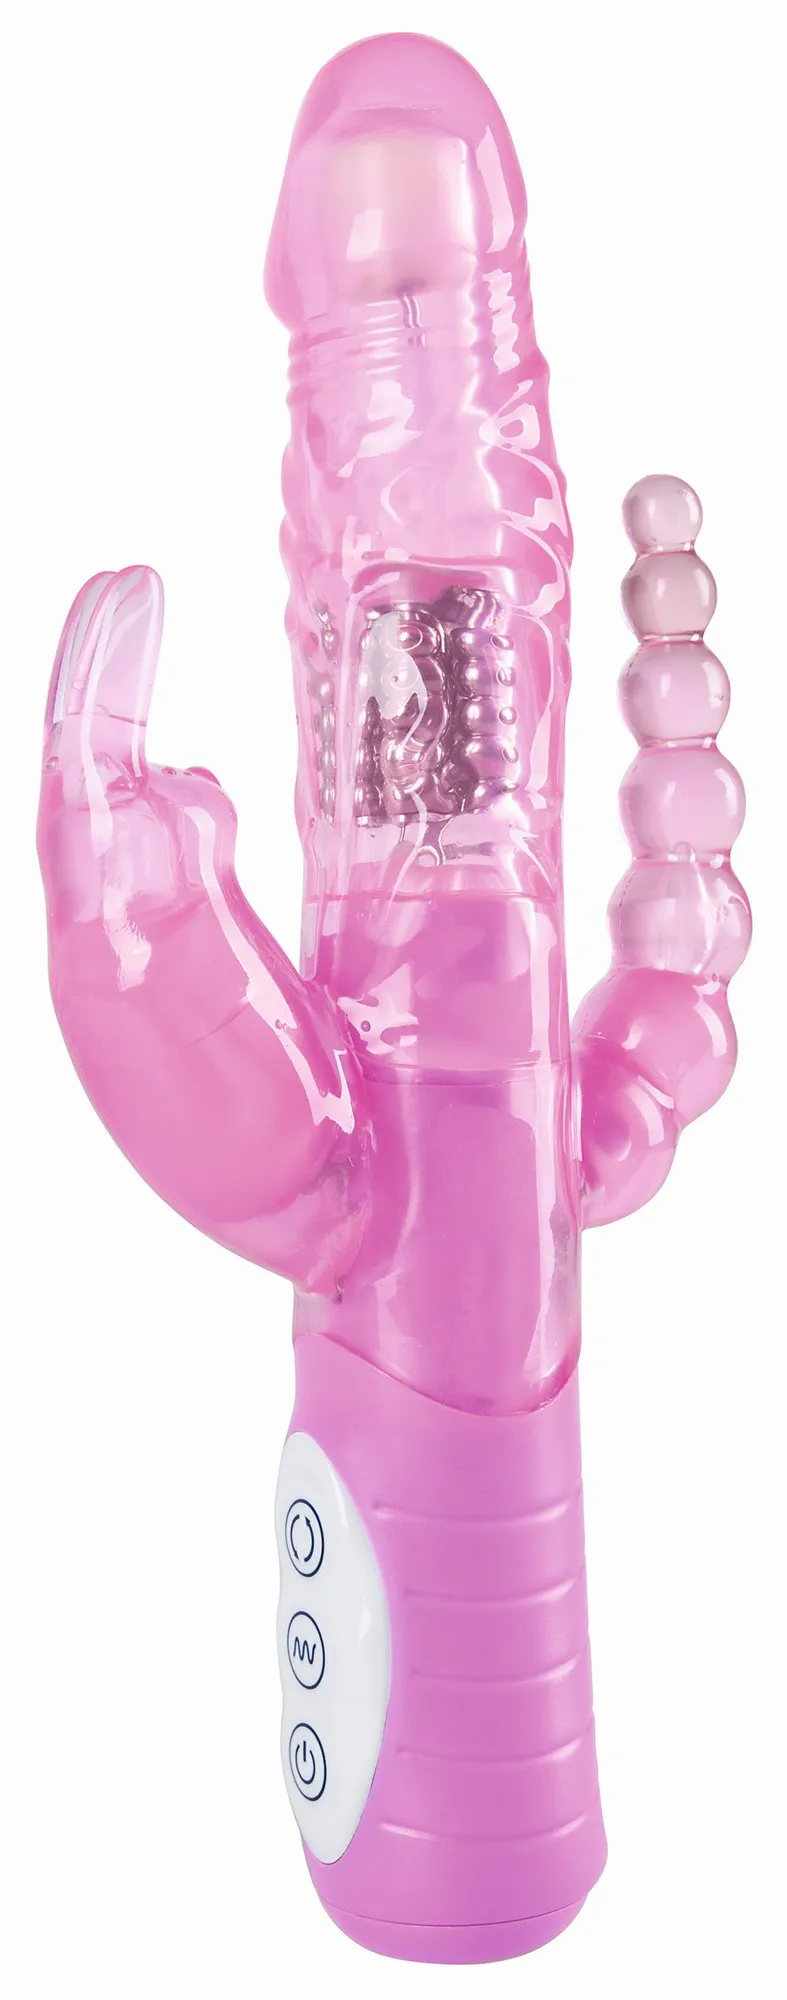 Anální kolík s kuličkami, vibrátor s otáčivými kuličkami a stimulátor klitorisu v jednom!